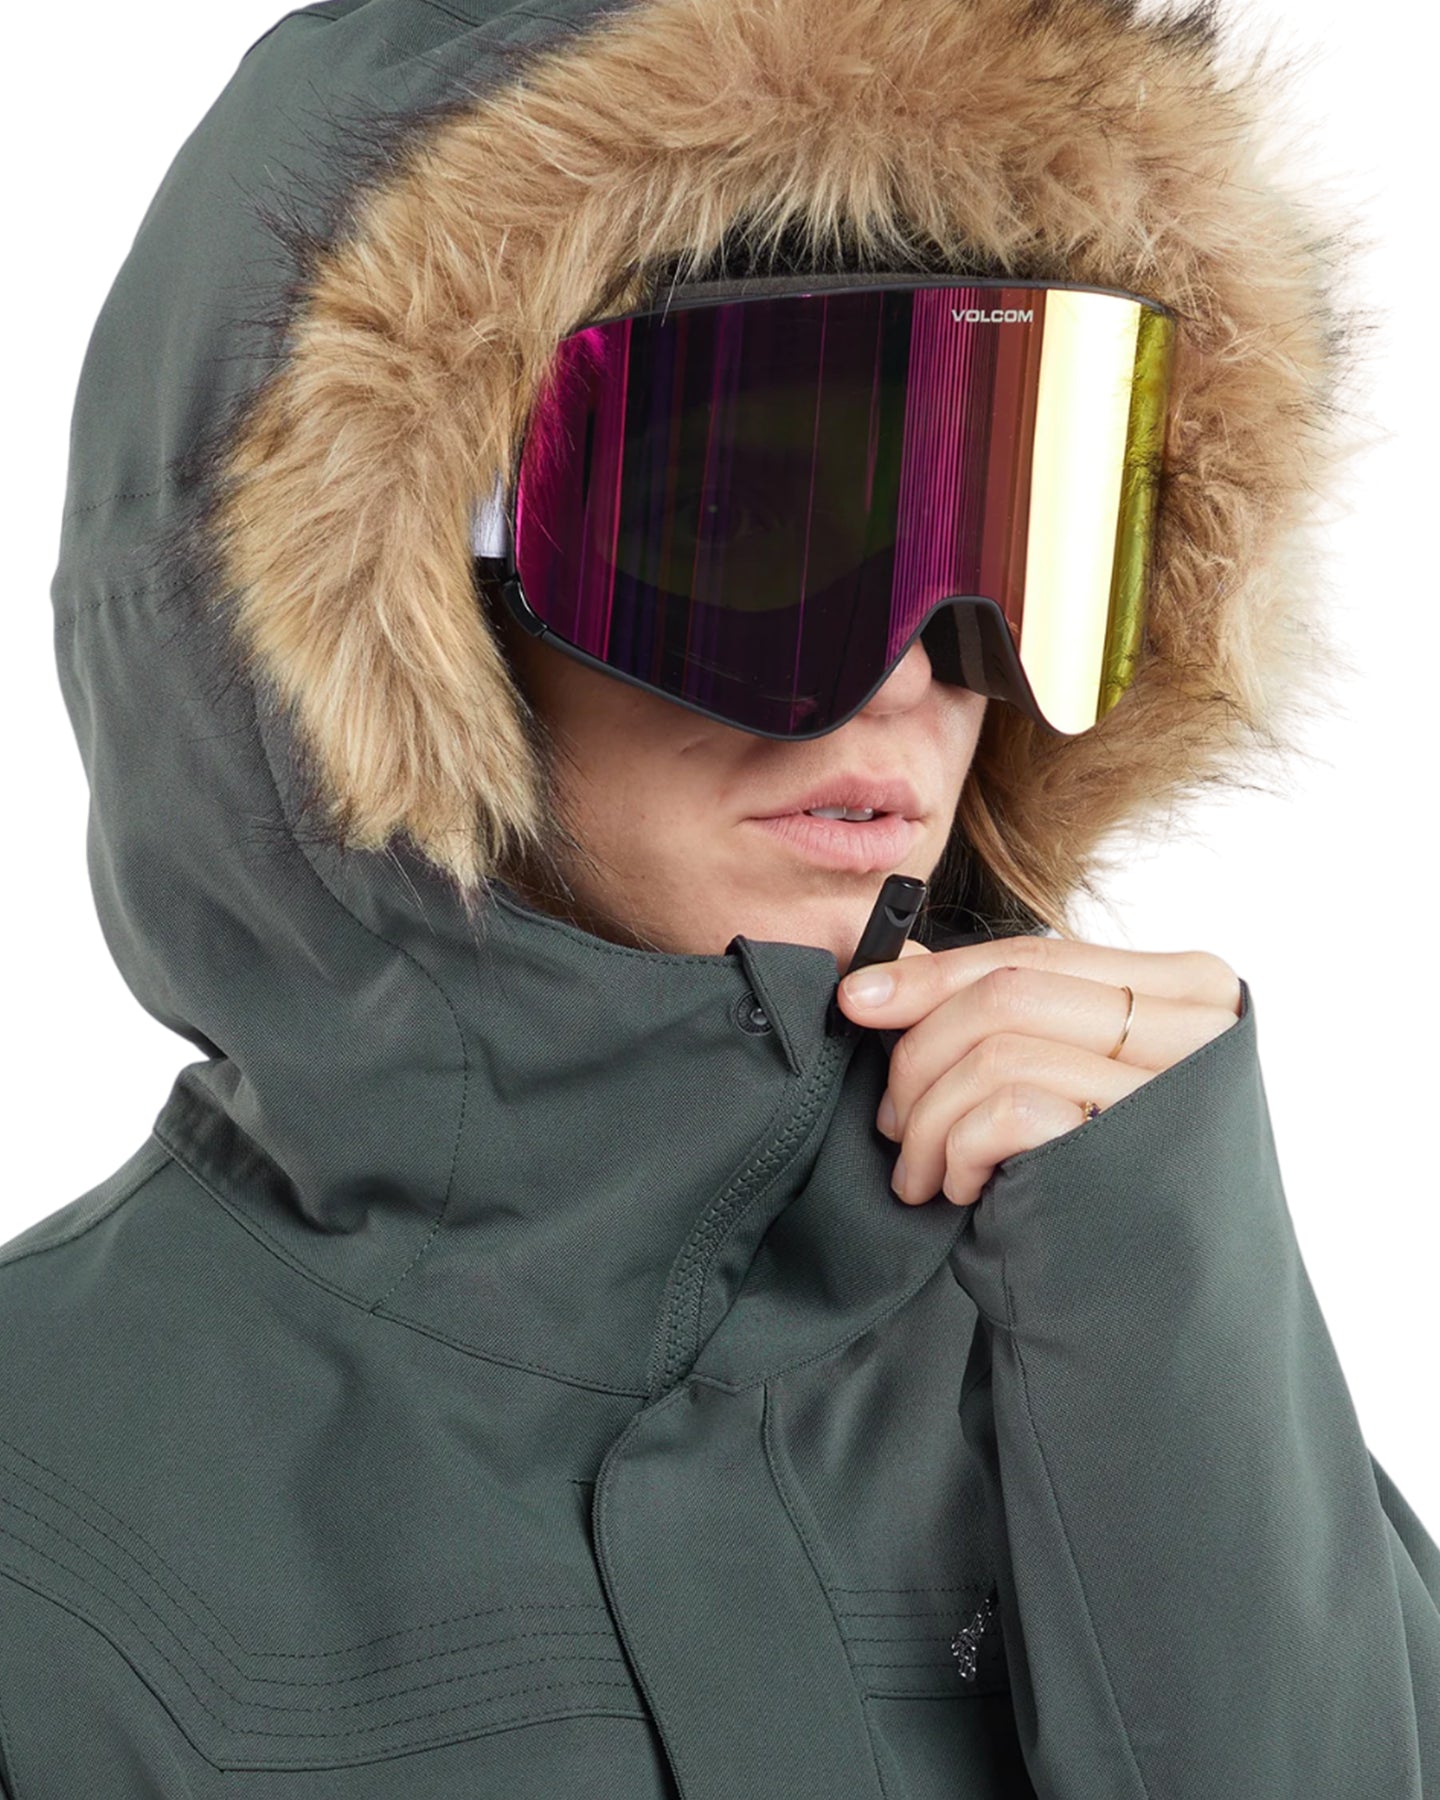 Volcom Shadow Ins Jacket - Eucalyptus Women's Snow Jackets - Trojan Wake Ski Snow